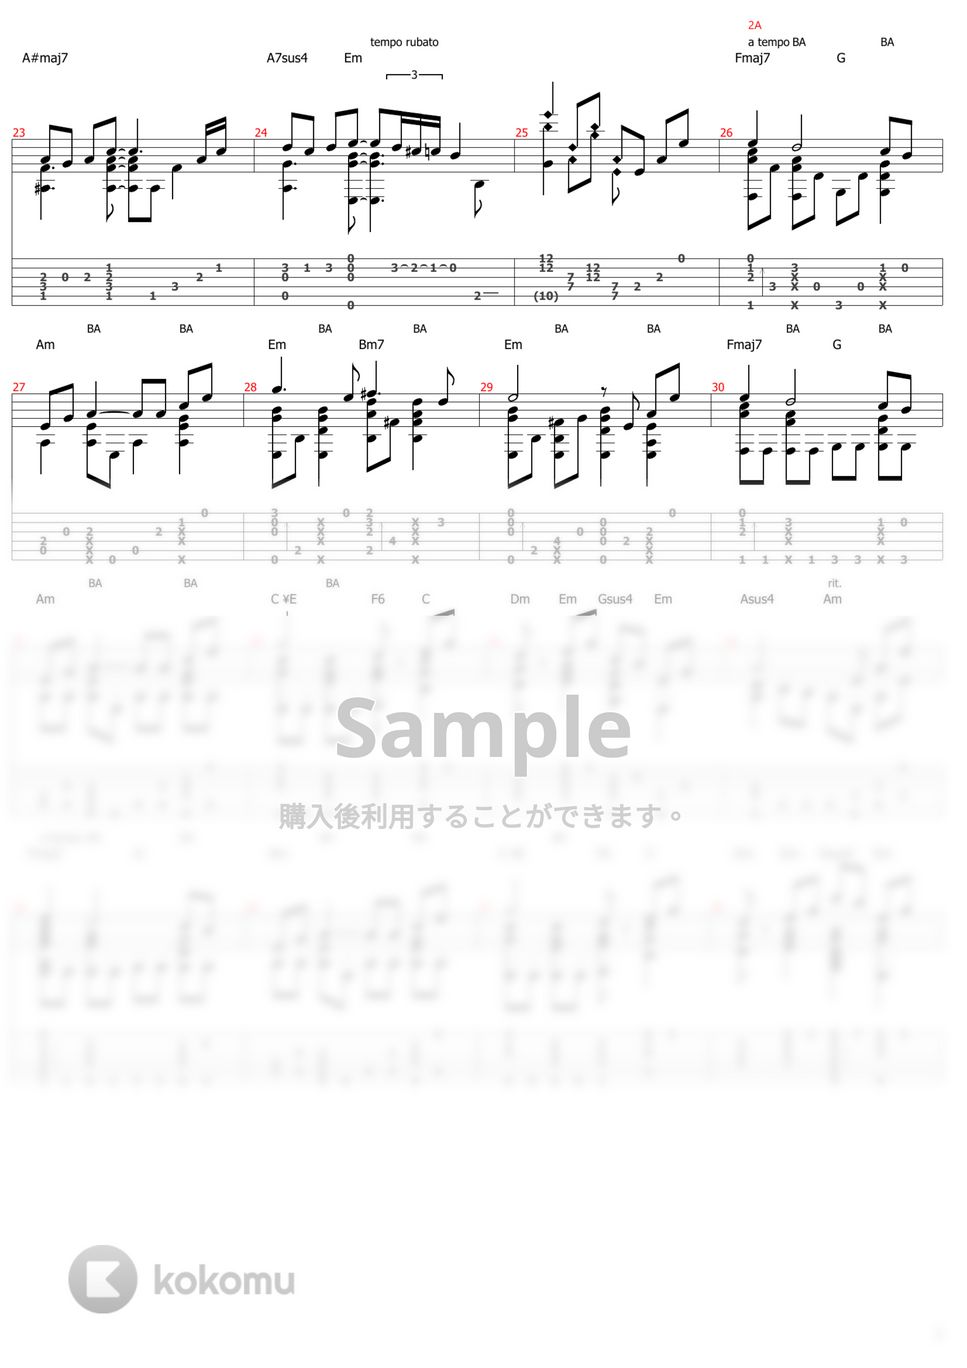 久石譲 - アシタカせっ記 (ソロギター) by おさむらいさん